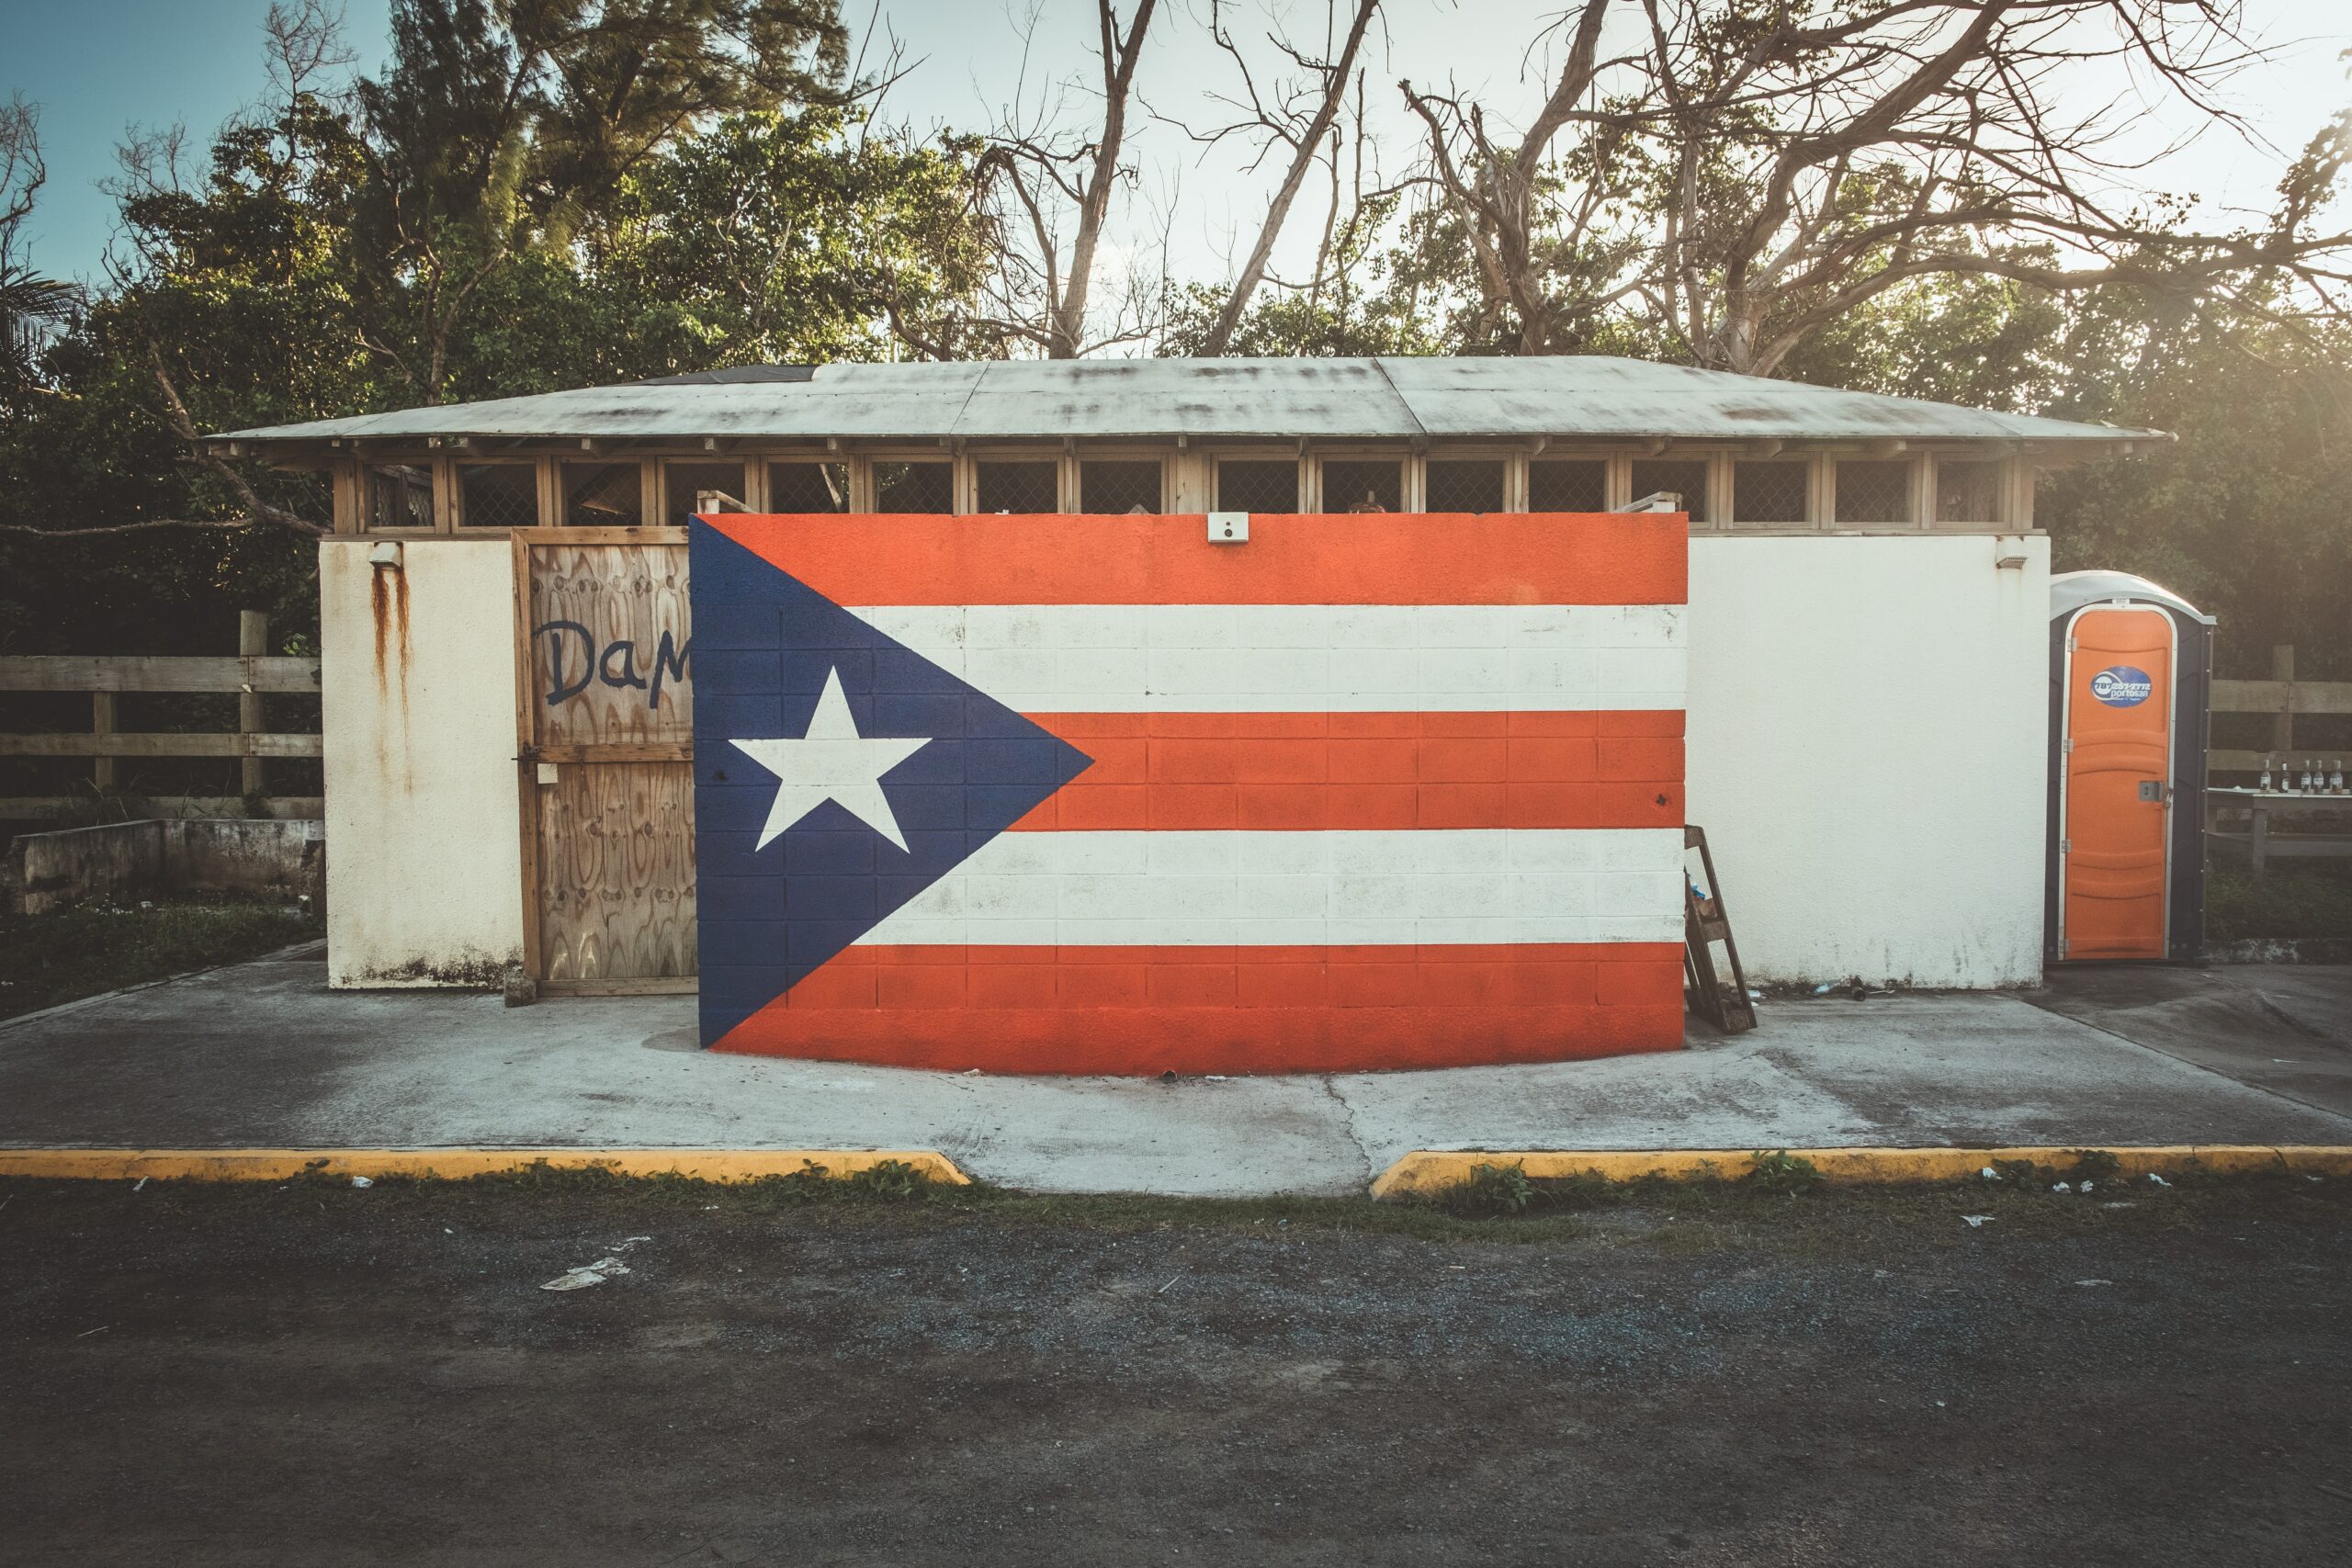 Mejores Brokers en Puerto Rico